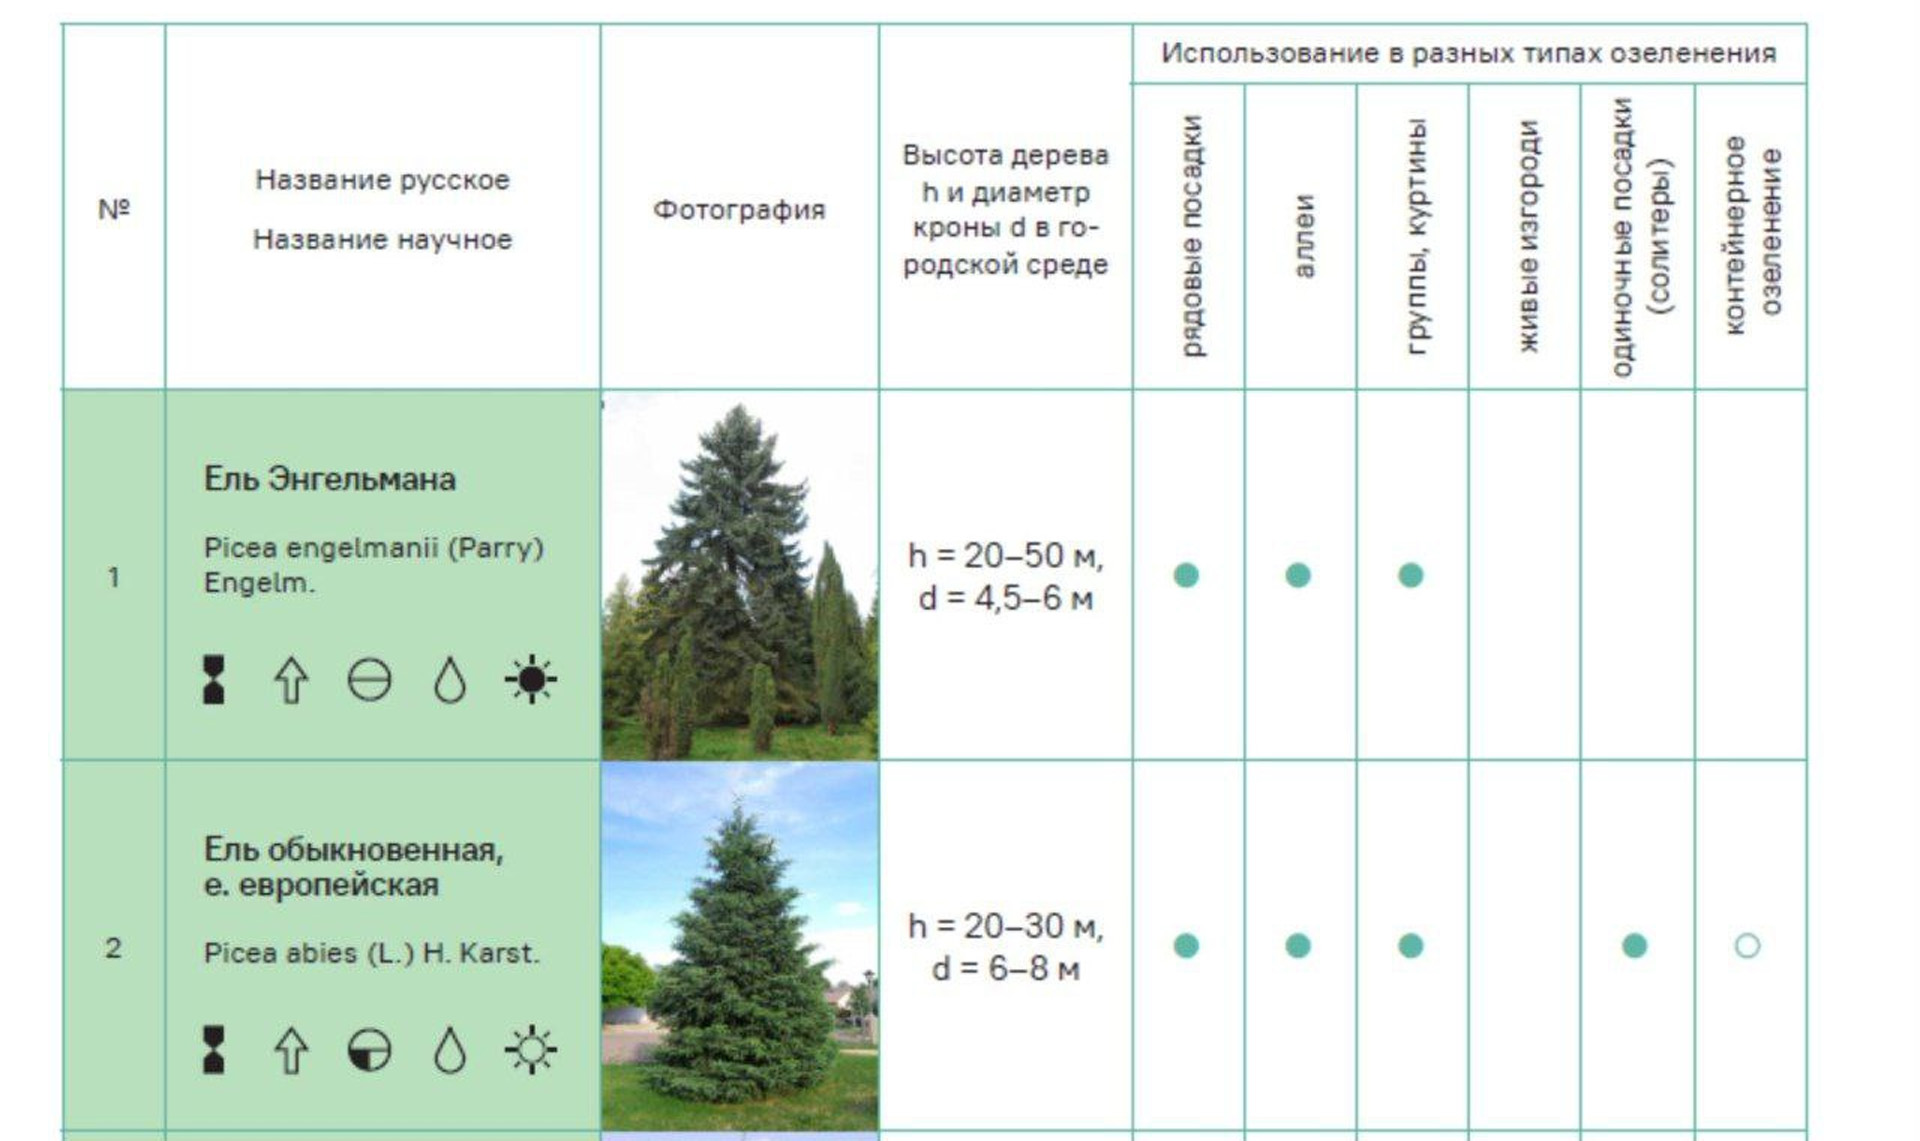 Управление архитектуры утвердило дизайн-код озеленения Челябинска